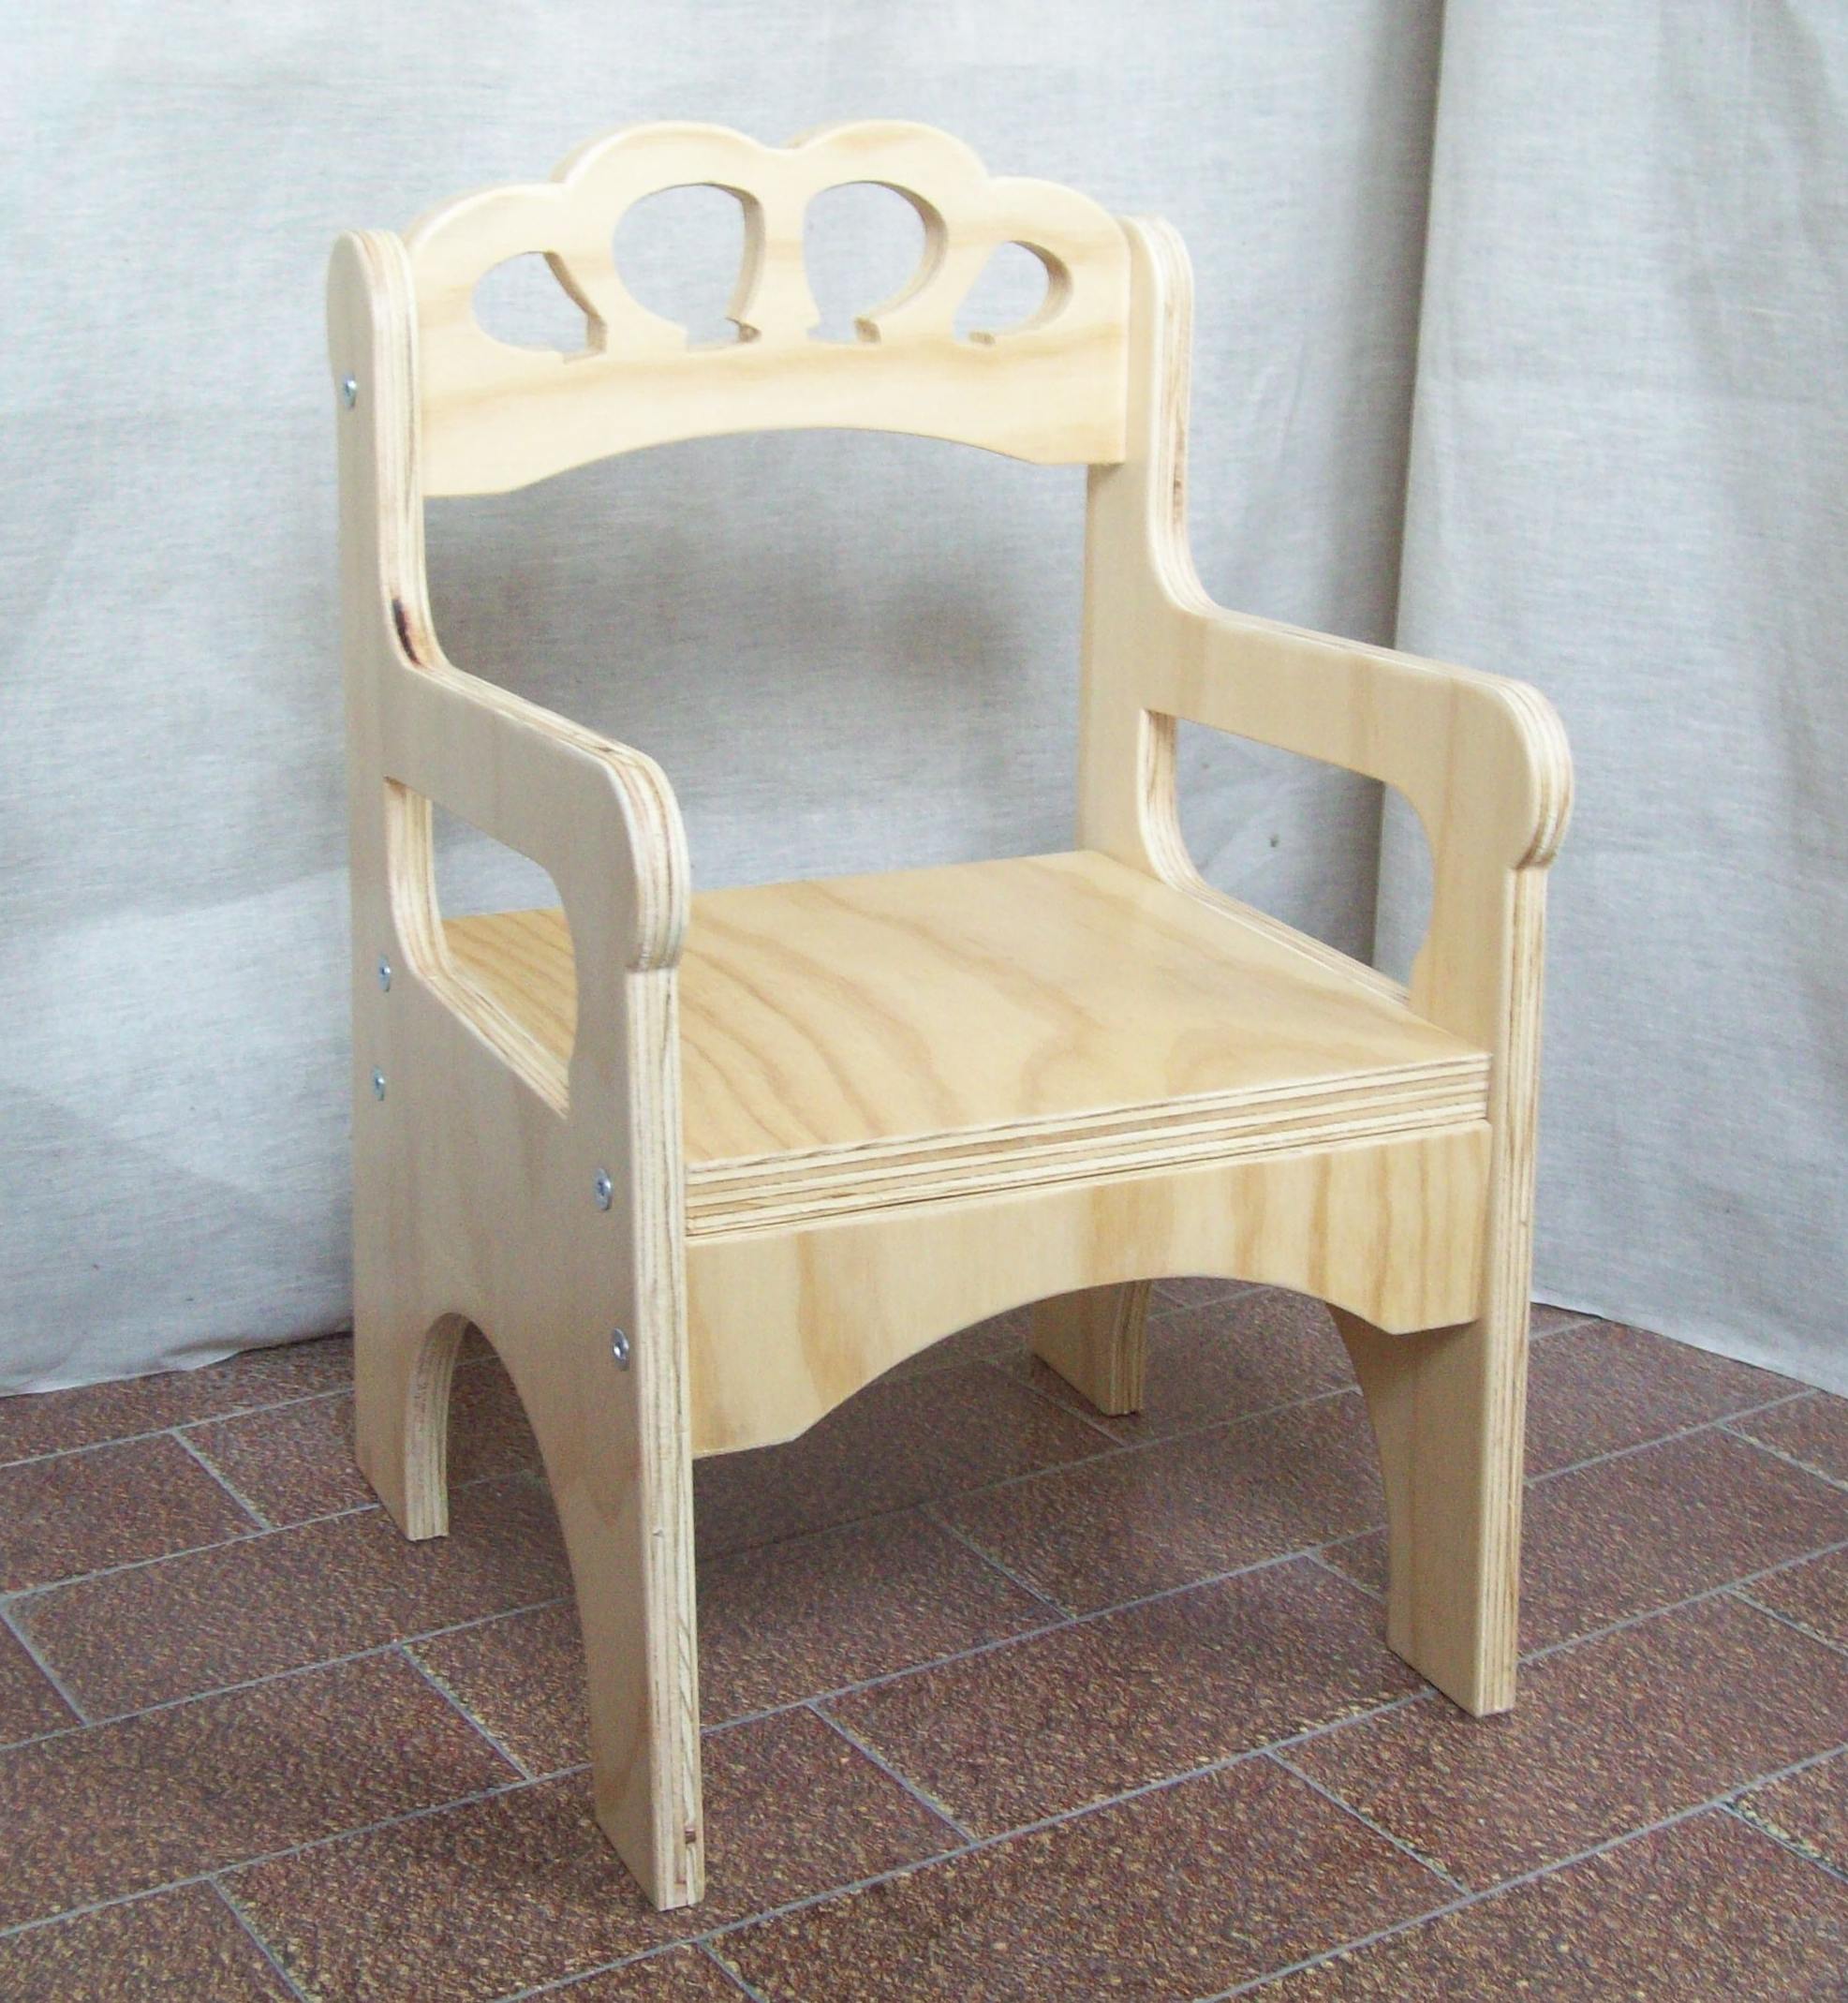 sedia per bambini - seggiolina in legno - seggiolina montessoriana